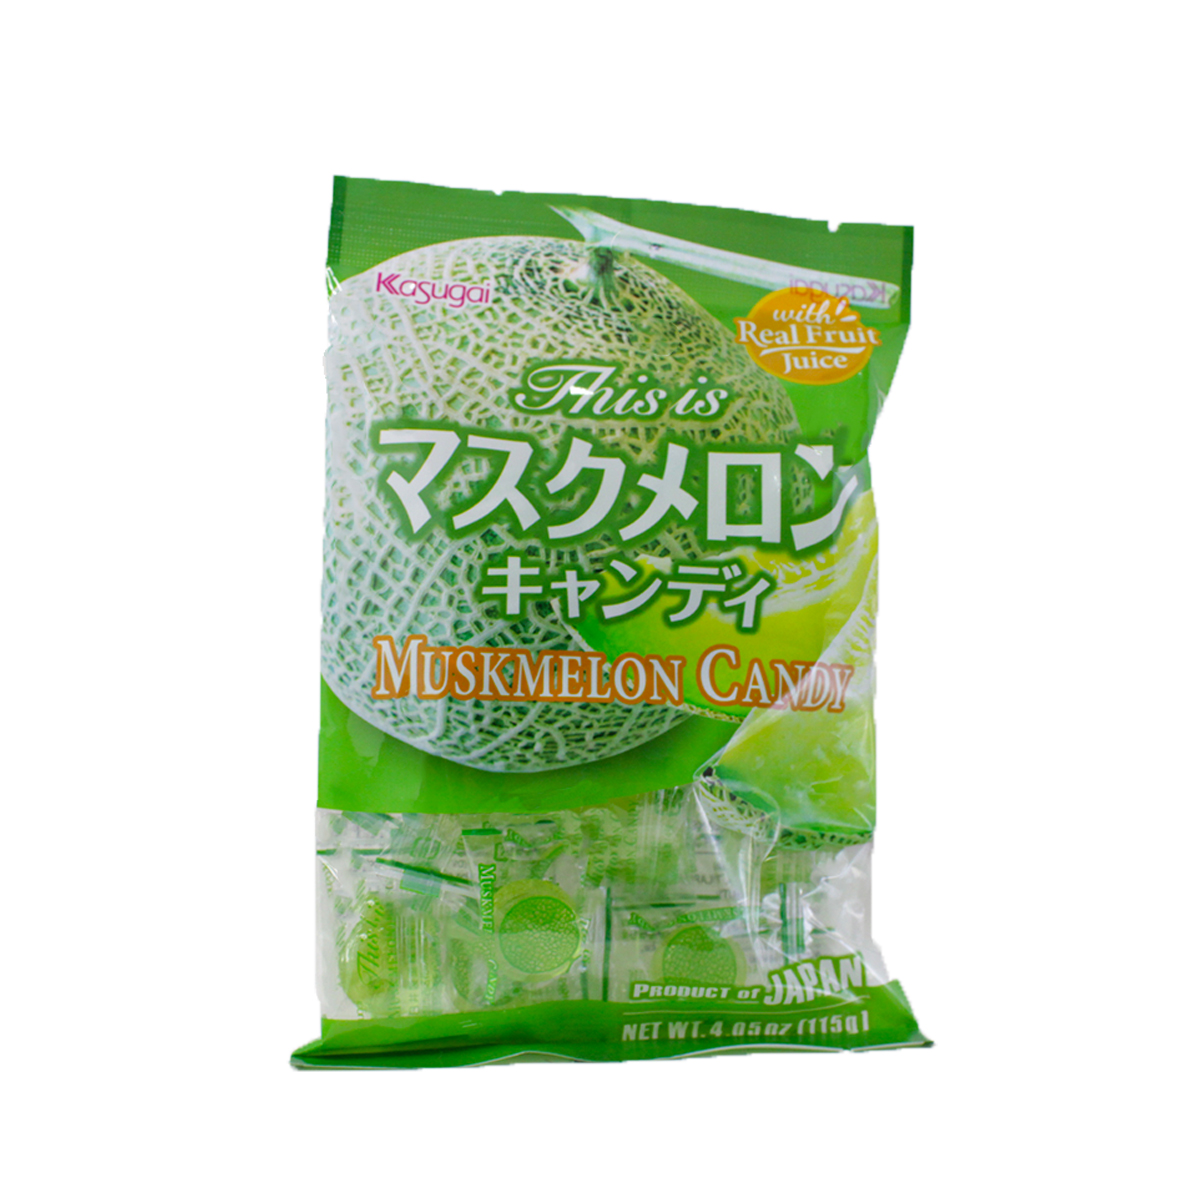 Bala de Melão Japonesa Musk Melon Kasugai - 115 gramas